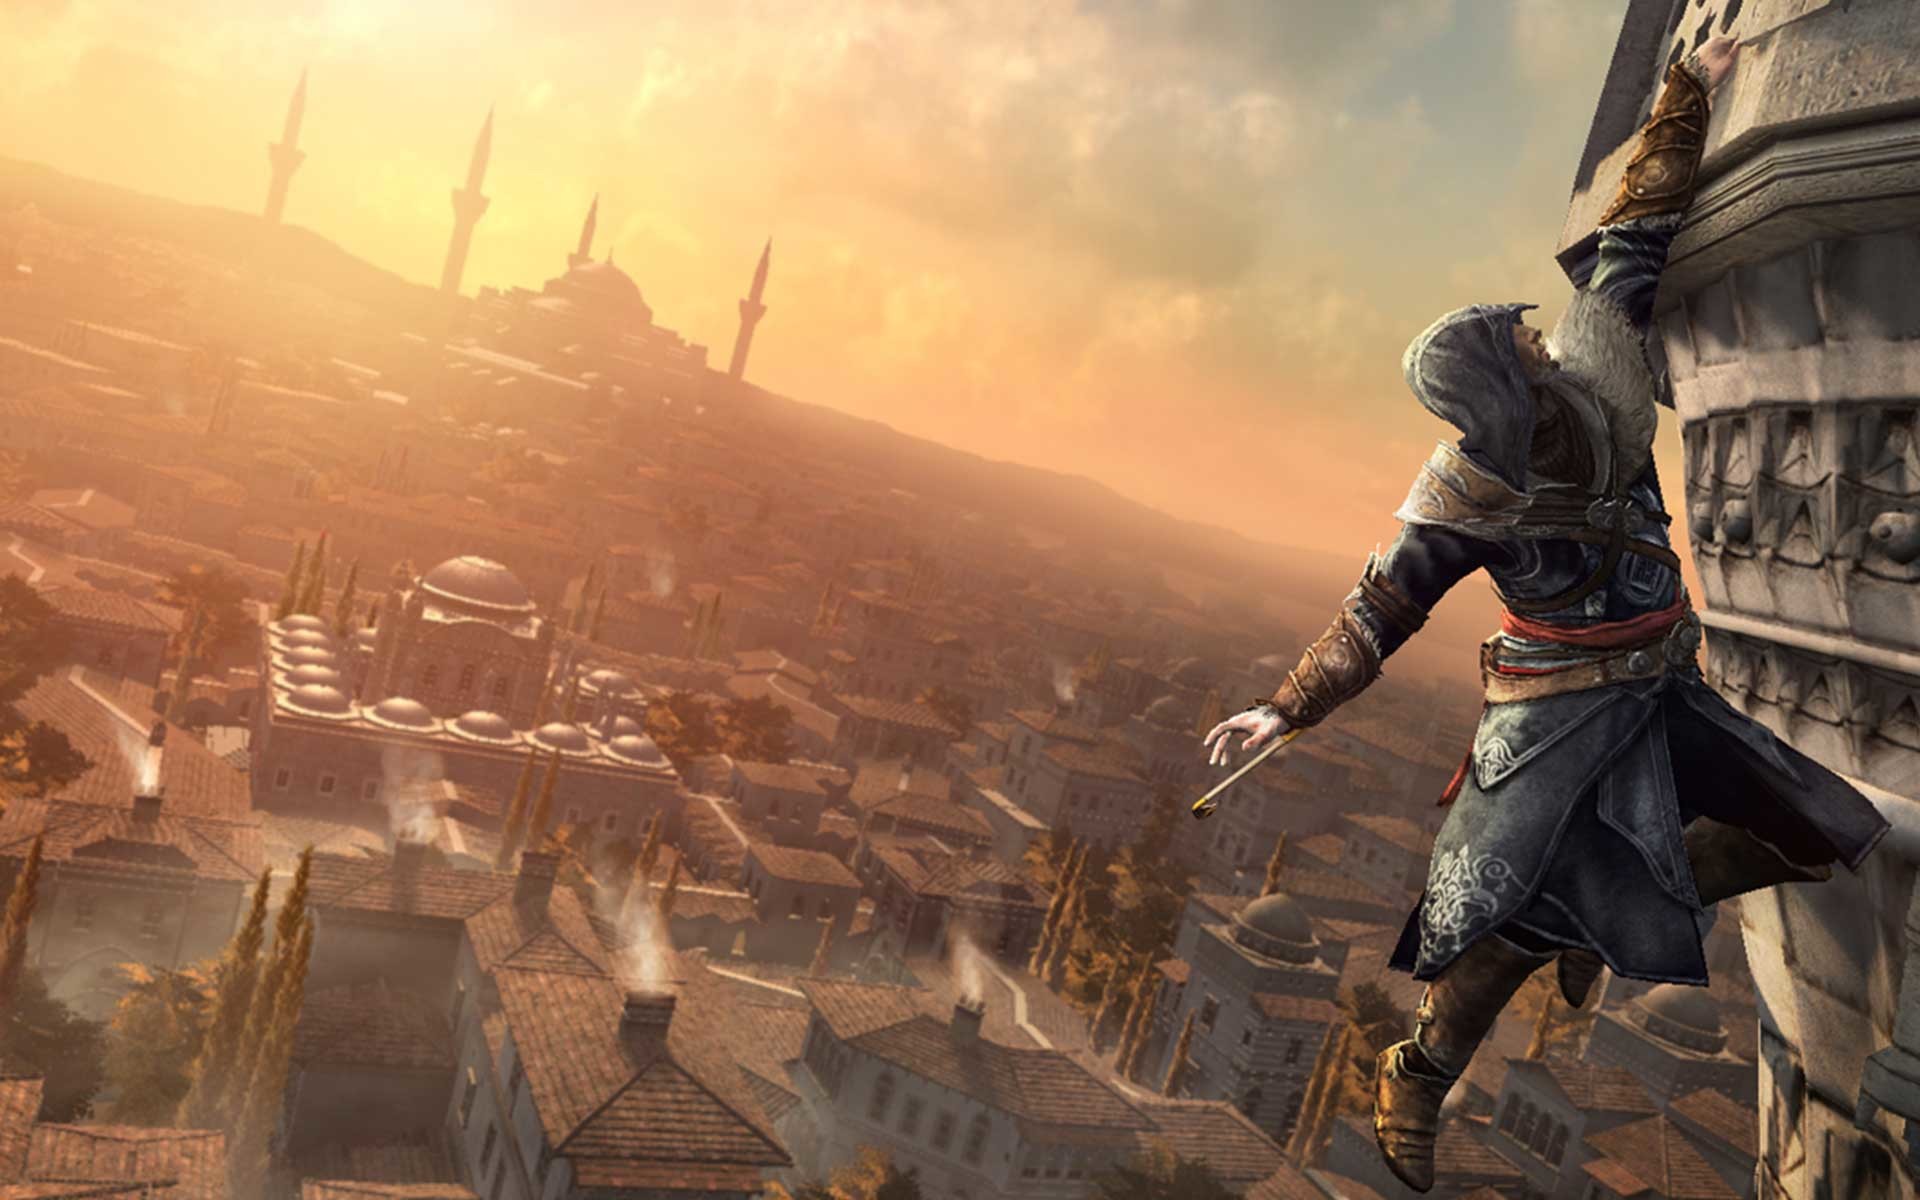 Обои про игры. Ассасин Крид ревелатионс. Assassin's Creed: Revelations. Ассасин Крид 2 ревелетион. Ассасин Крид Откровение.